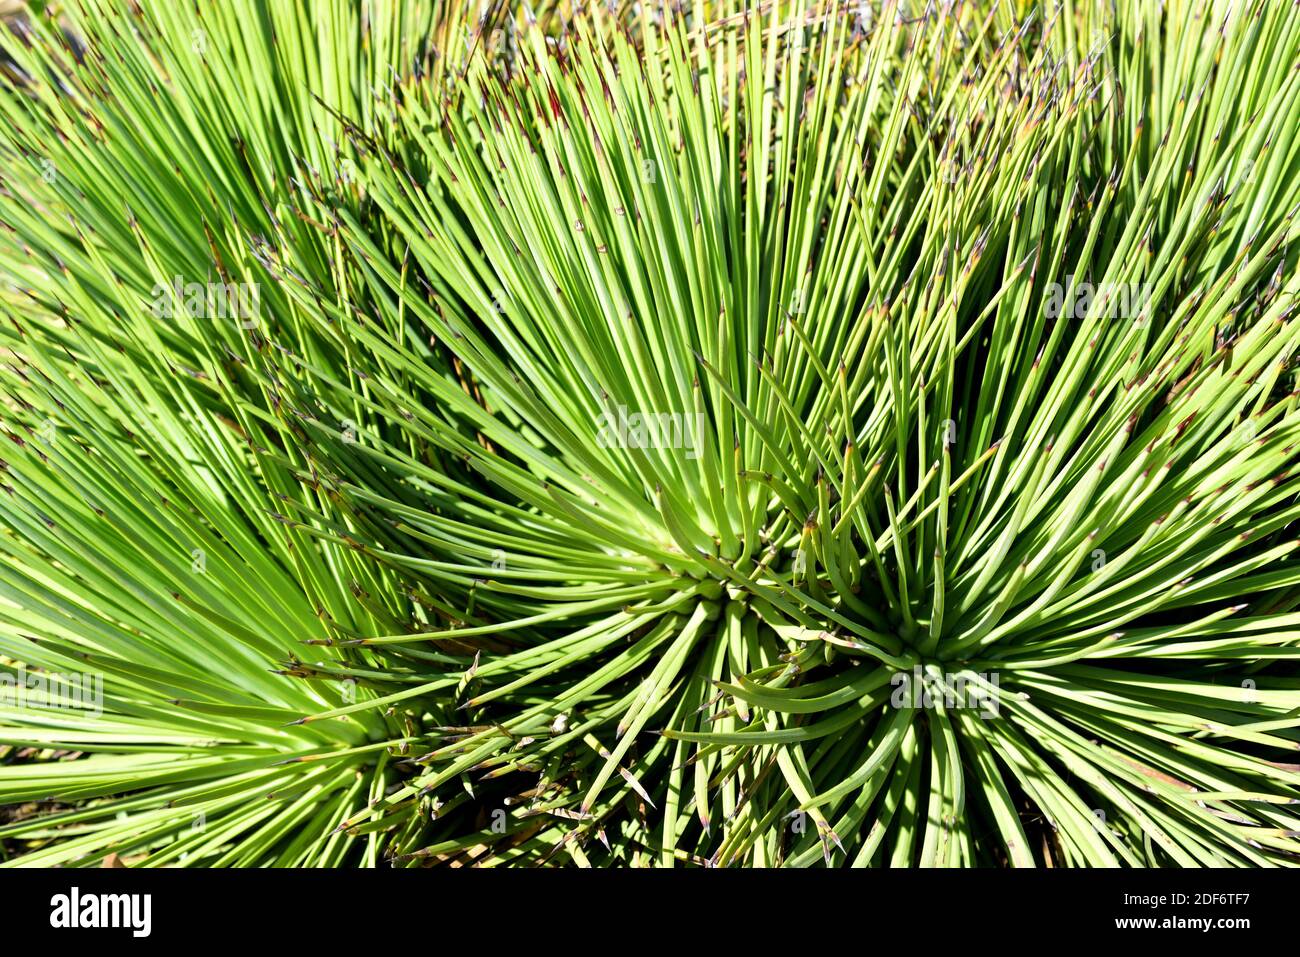 L'agave à feuilles étroites (Agave striata) est une plante vivace originaire du Mexique. Feuilles en détail rosette. Banque D'Images